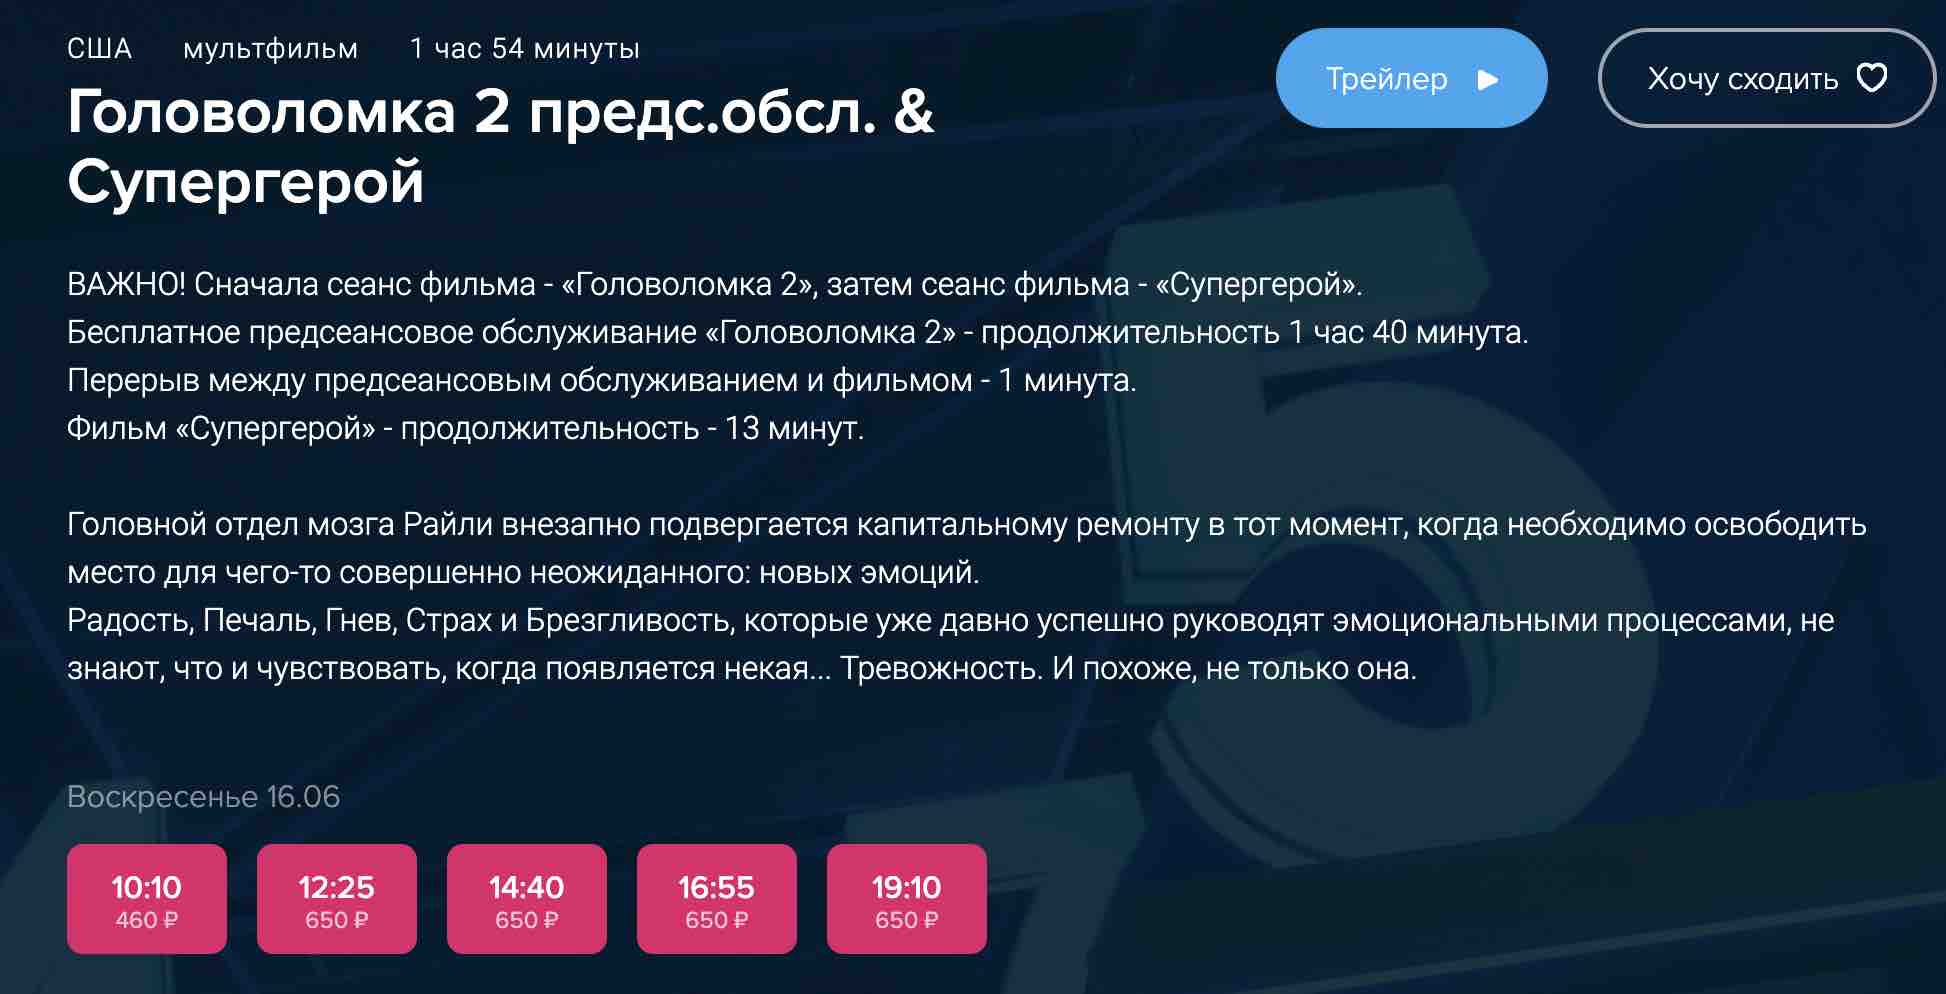 Когда мультфильм «Головоломка 2» выйдет в кинотеатрах России и Беларуси на русском и онлайн